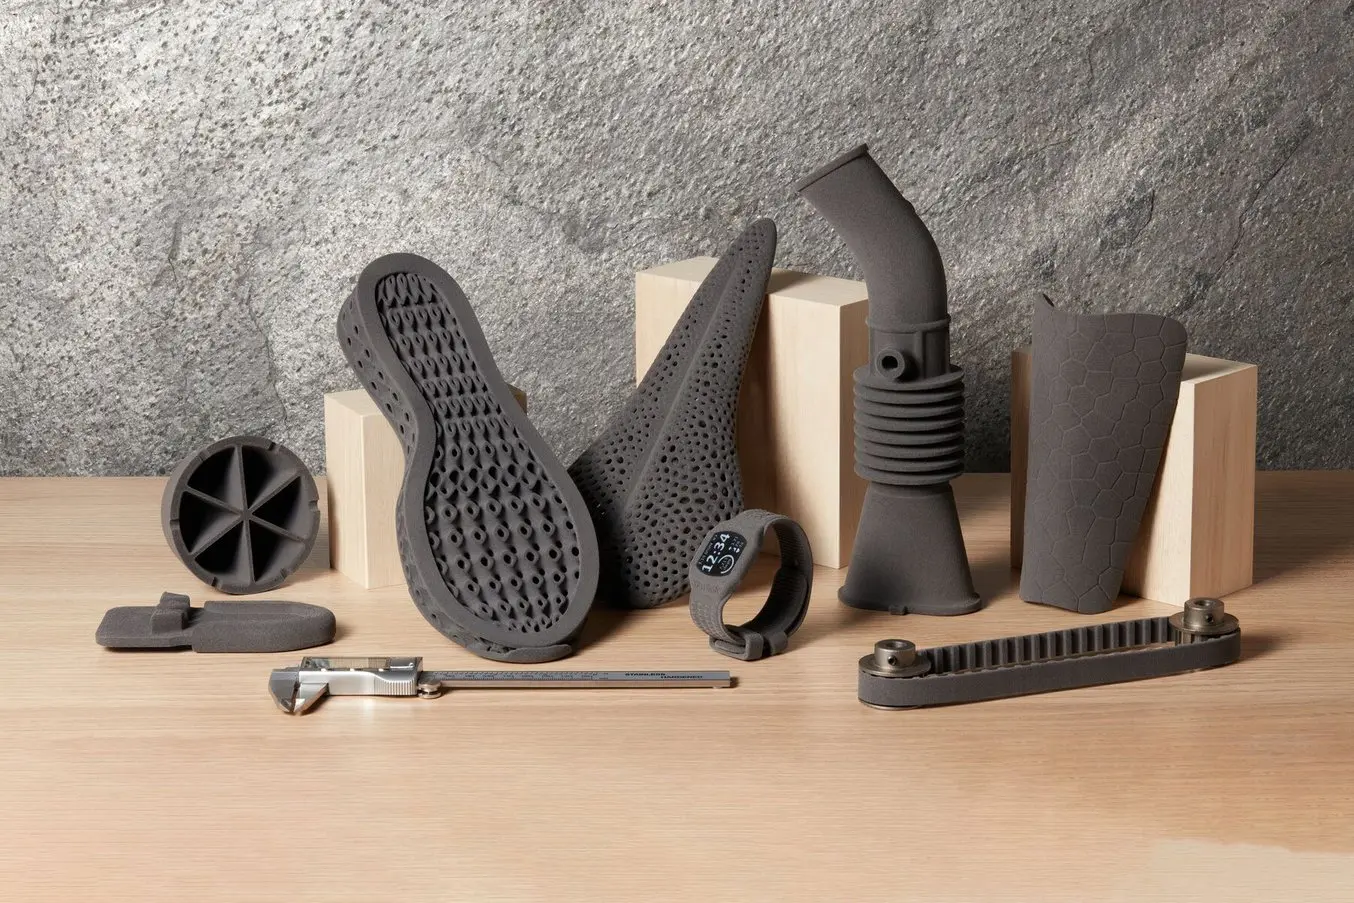 웨어러블, 성능 스포츠 장비 및 신발 안창을 포함한 유연한 SLS 3D 프린팅 파트